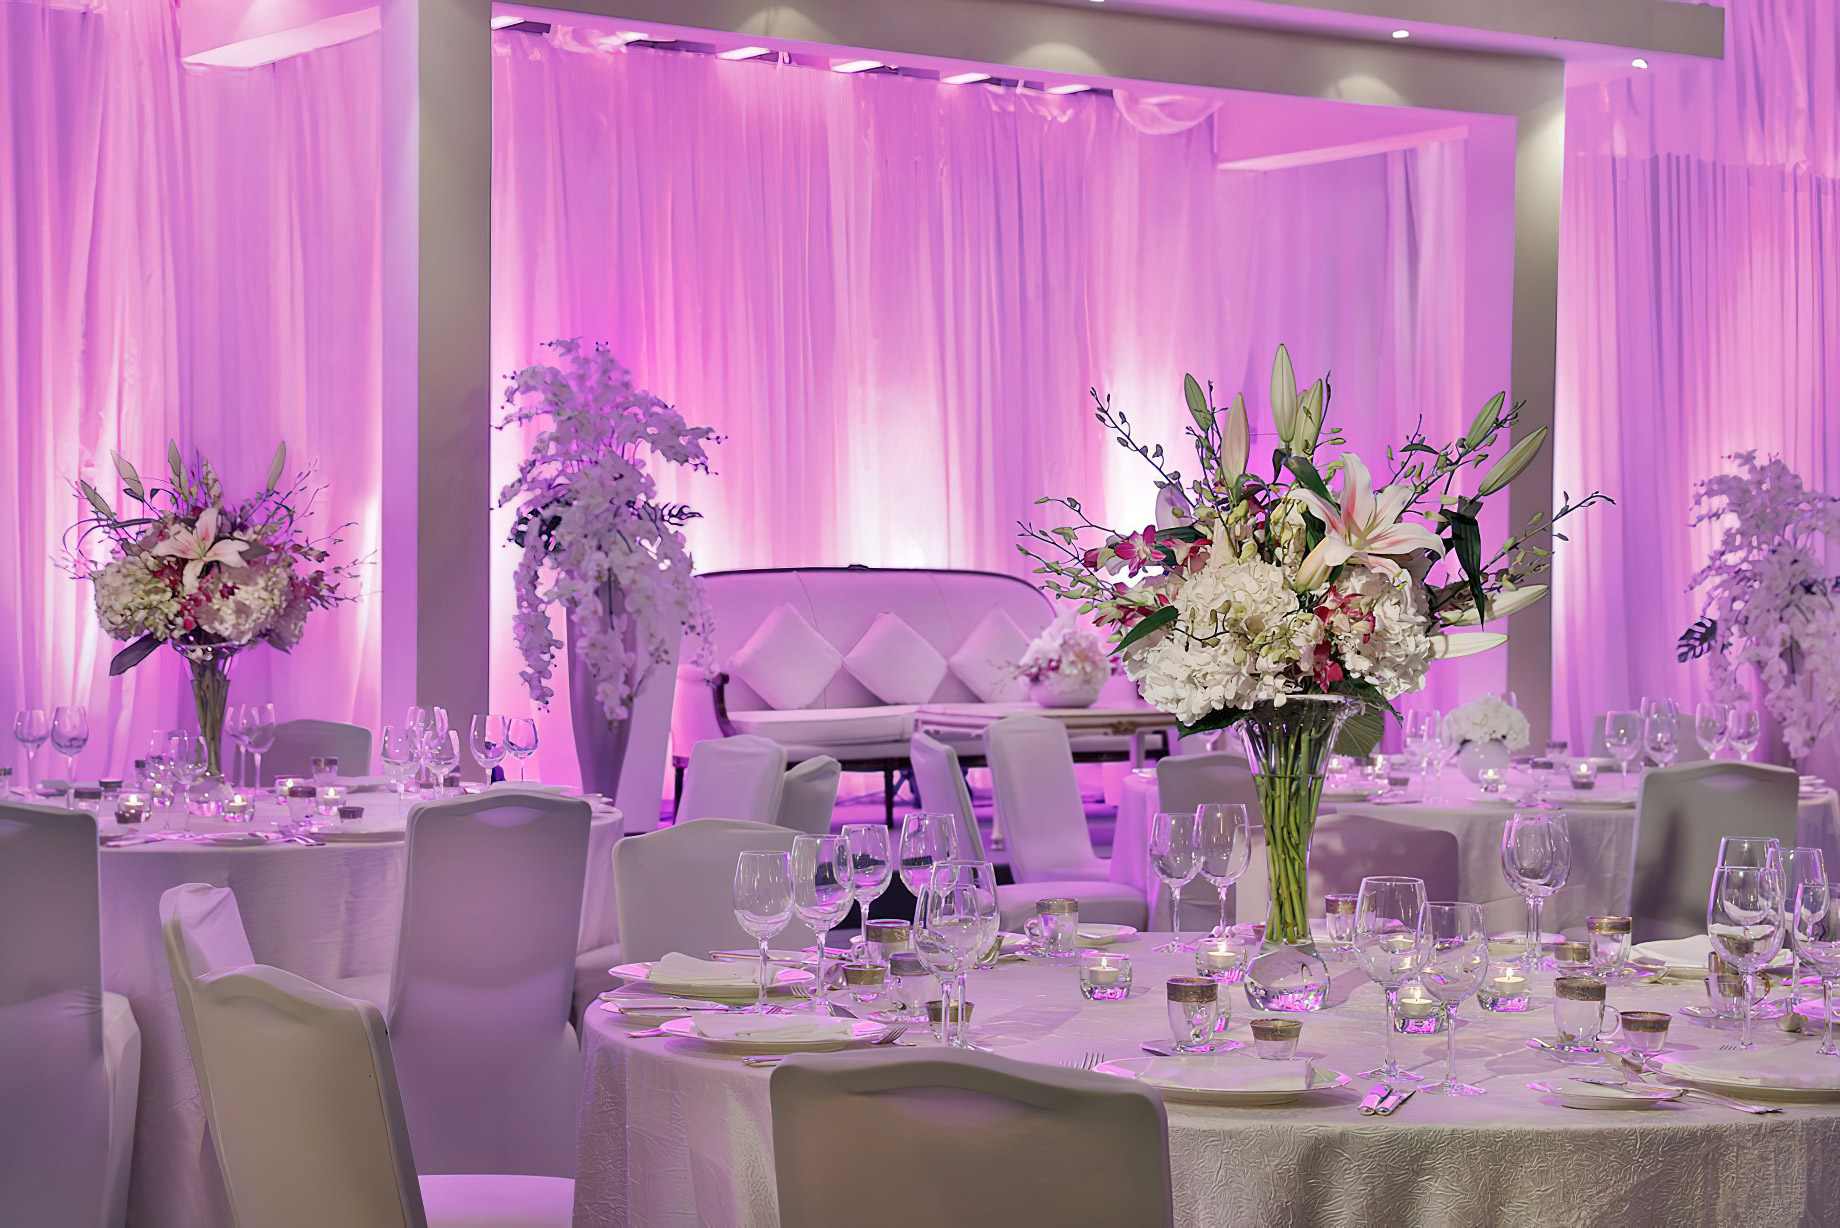 The Ritz-Carlton, Bahrain Resort Hotel – Manama, Bahrain – Wedding Event Setup